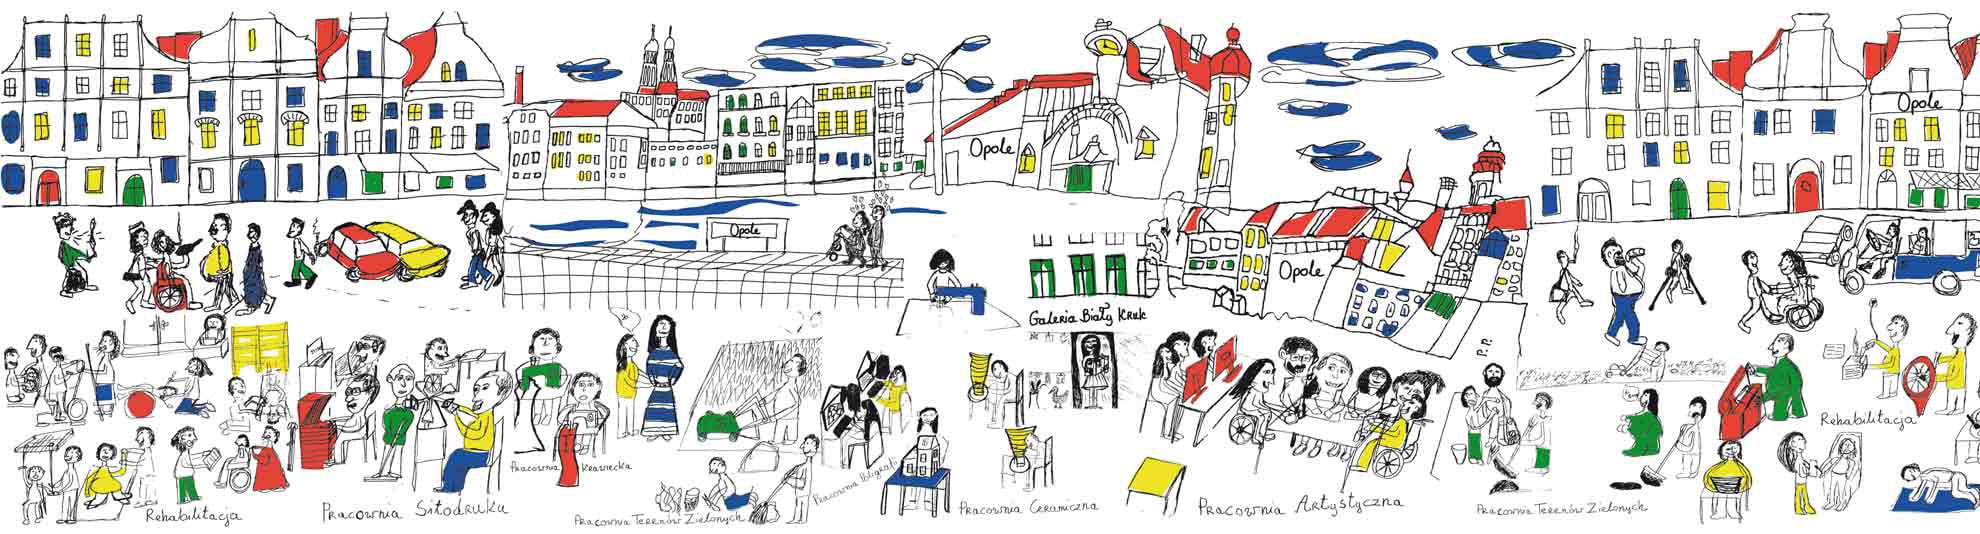 Kolorowy rysunek przedstawiający Opole oraz działalność Fundacji Dom i jej zakładów